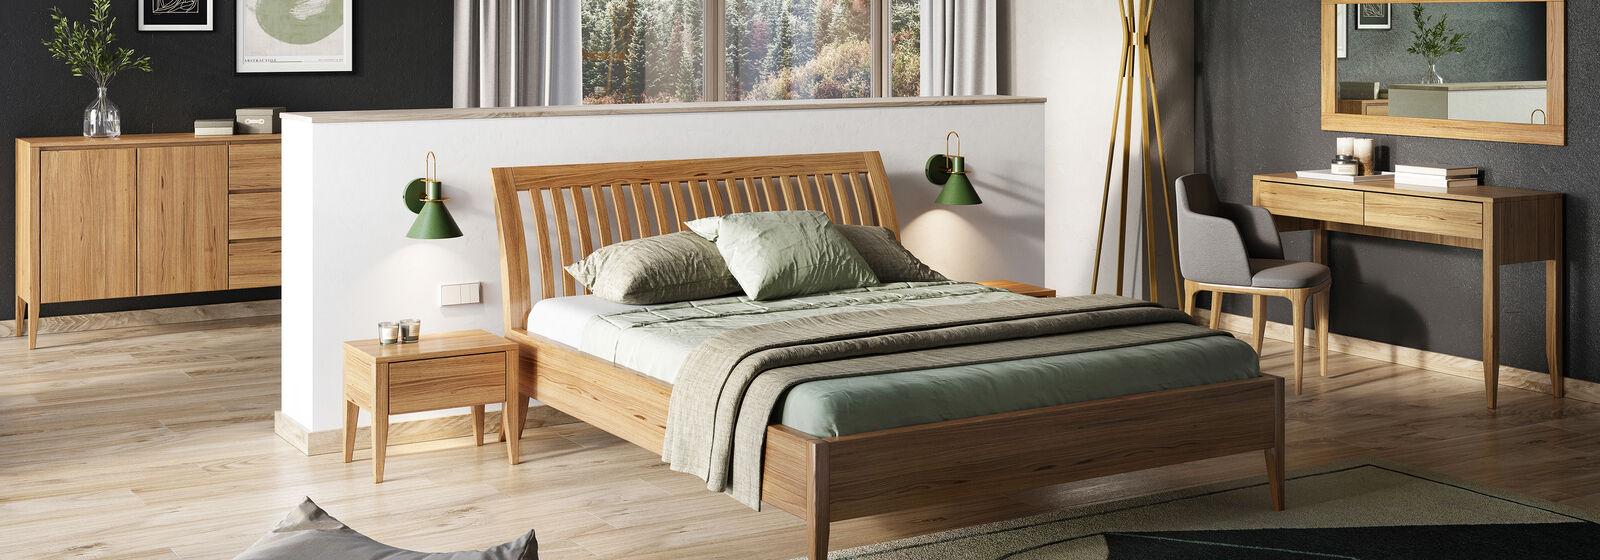 Schlafzimmer Holzbett Echtes Holz Bett Betten Hotel 180×200 Stil Massive Möbel